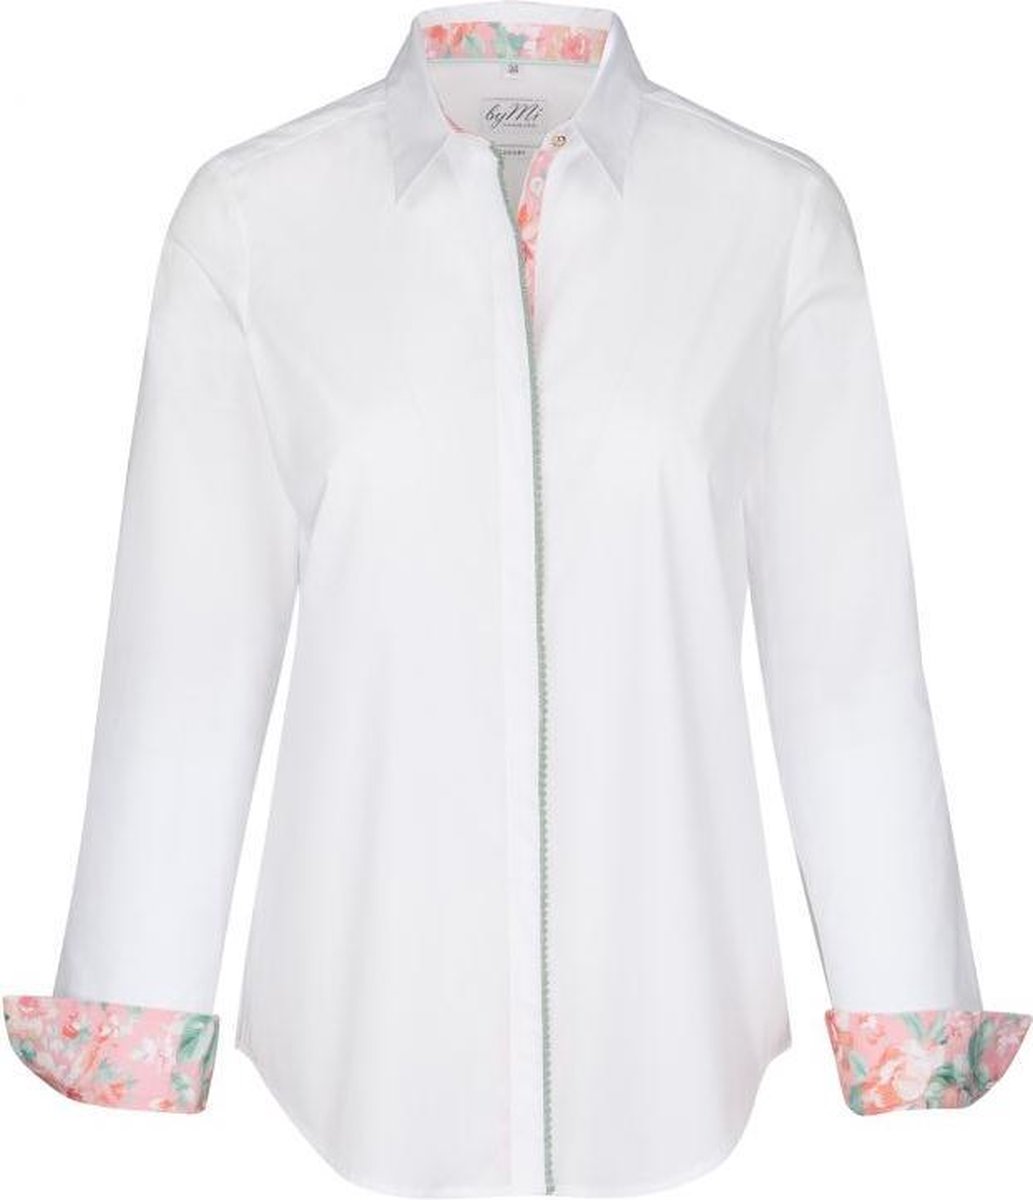 Dames blouse wit met roze bloemenprint goudtoon knopen volwassen lange mouw katoen luxe chic maat 40